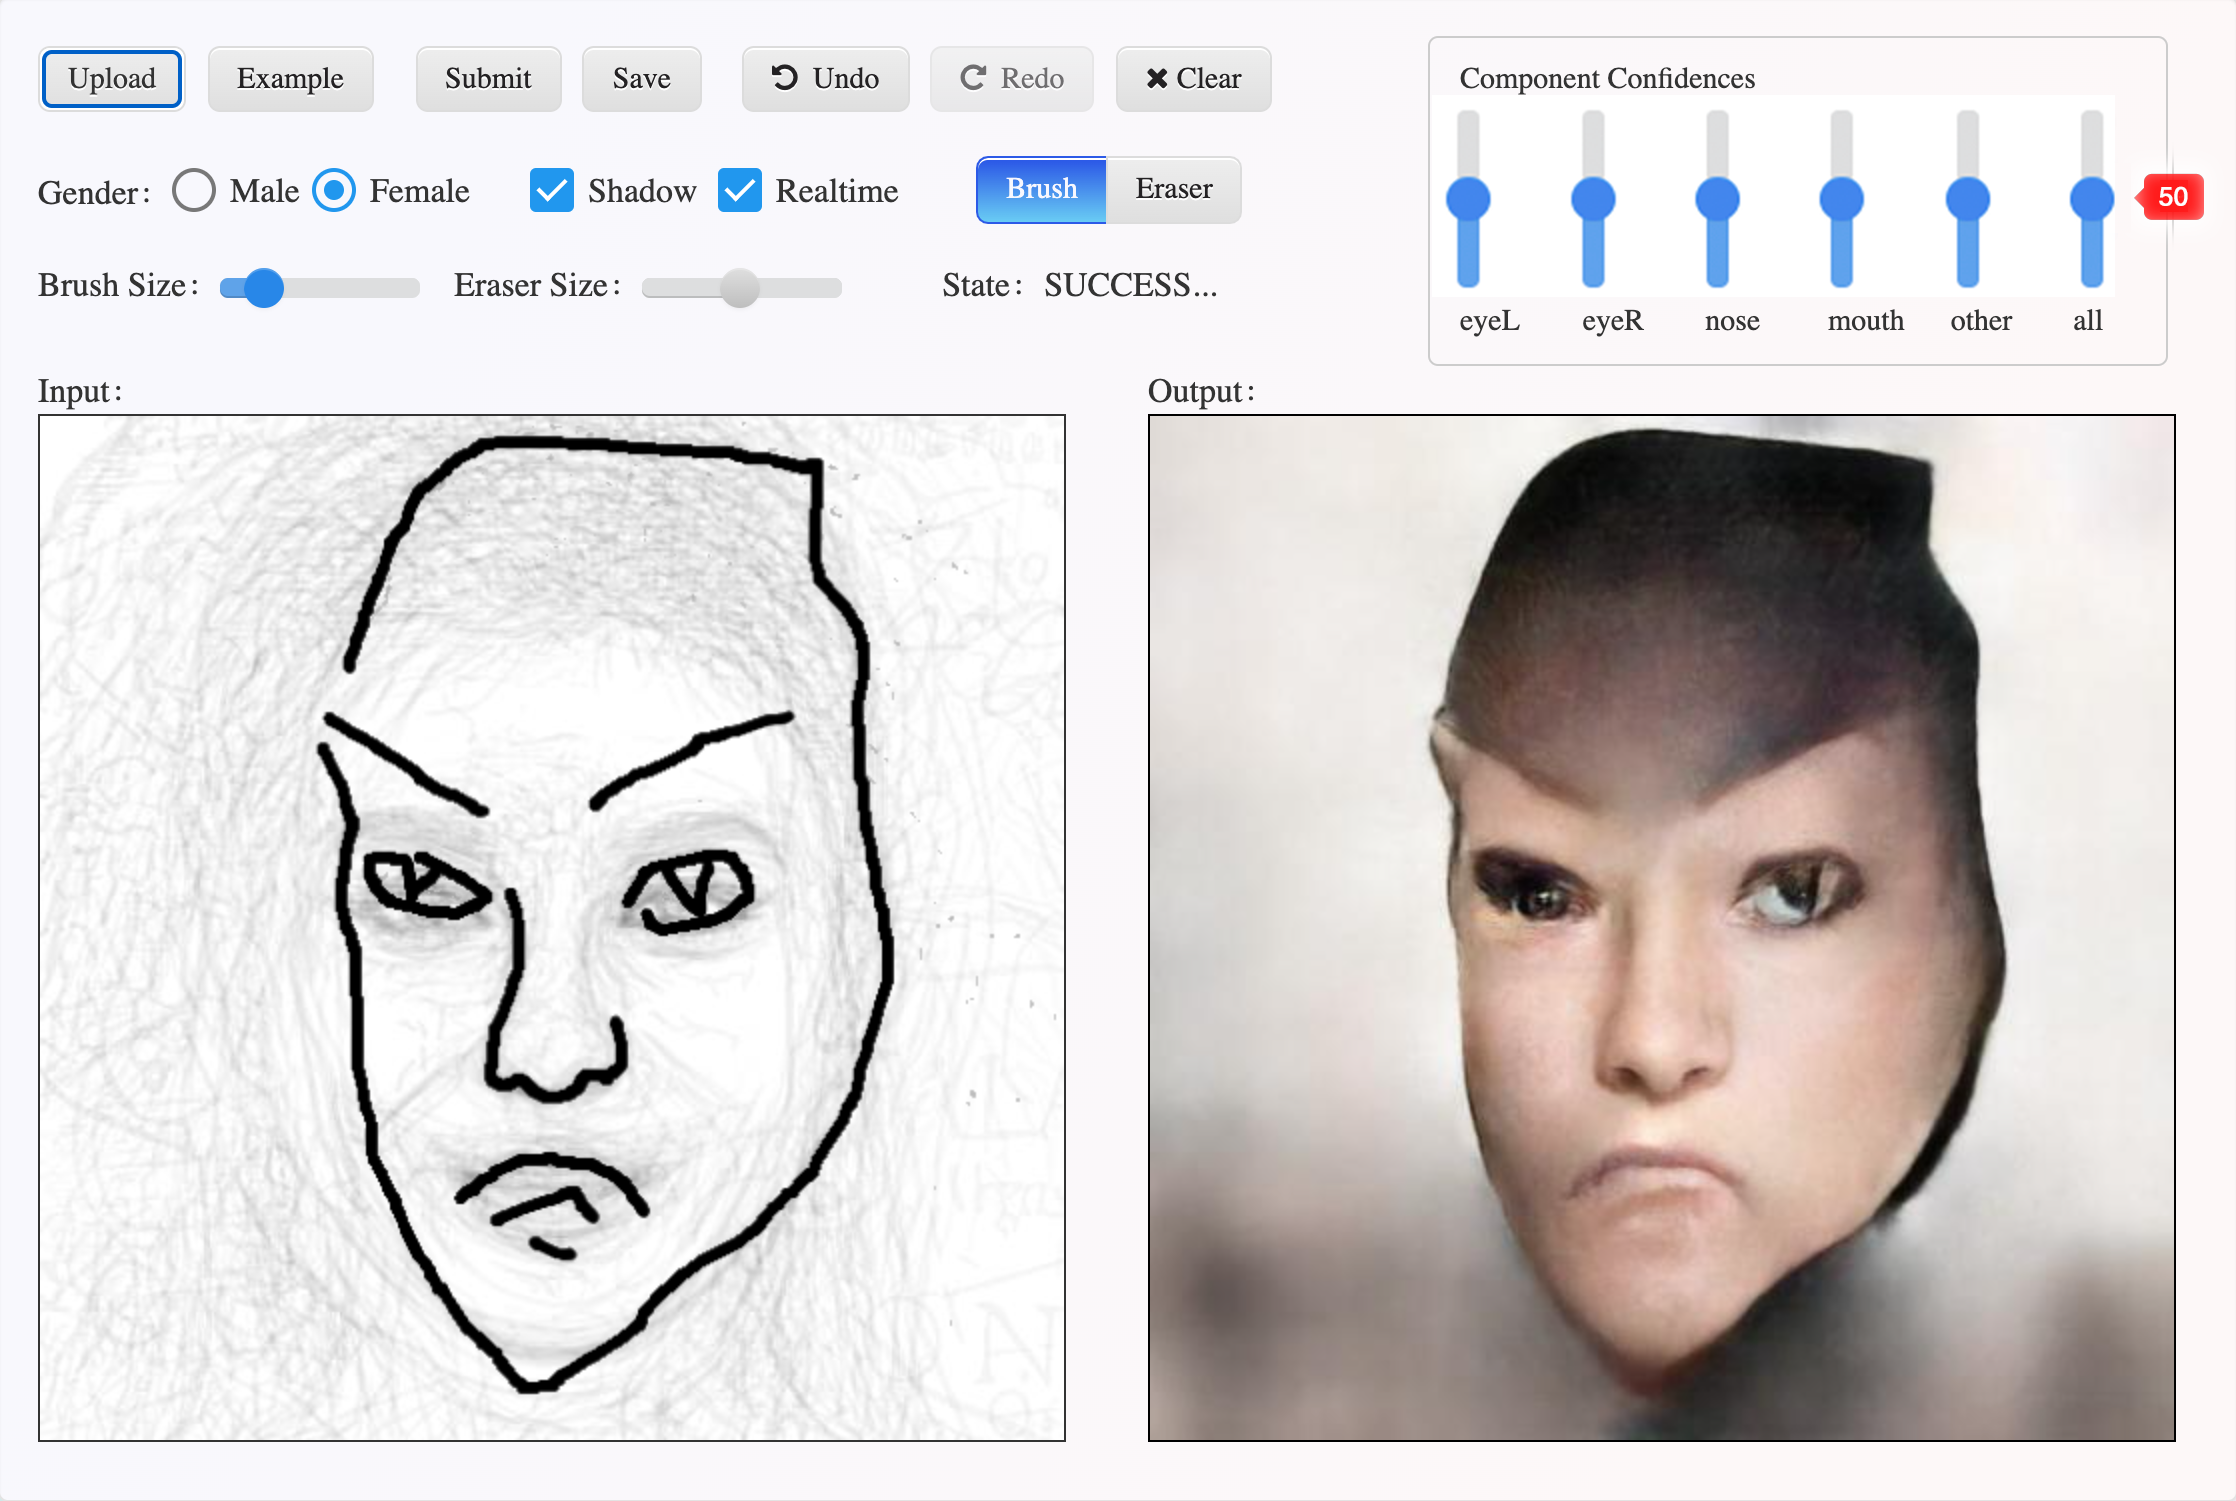 Das Bild ist zweigeteilt. Links ist eine Zeichnung der Außenform eines Gesichtes sowie zwei Augen. Rechts davon ist ein von einer AI generiertes Bild, wie ein Passfoto der gezeichneten Person aussehen könnte. 